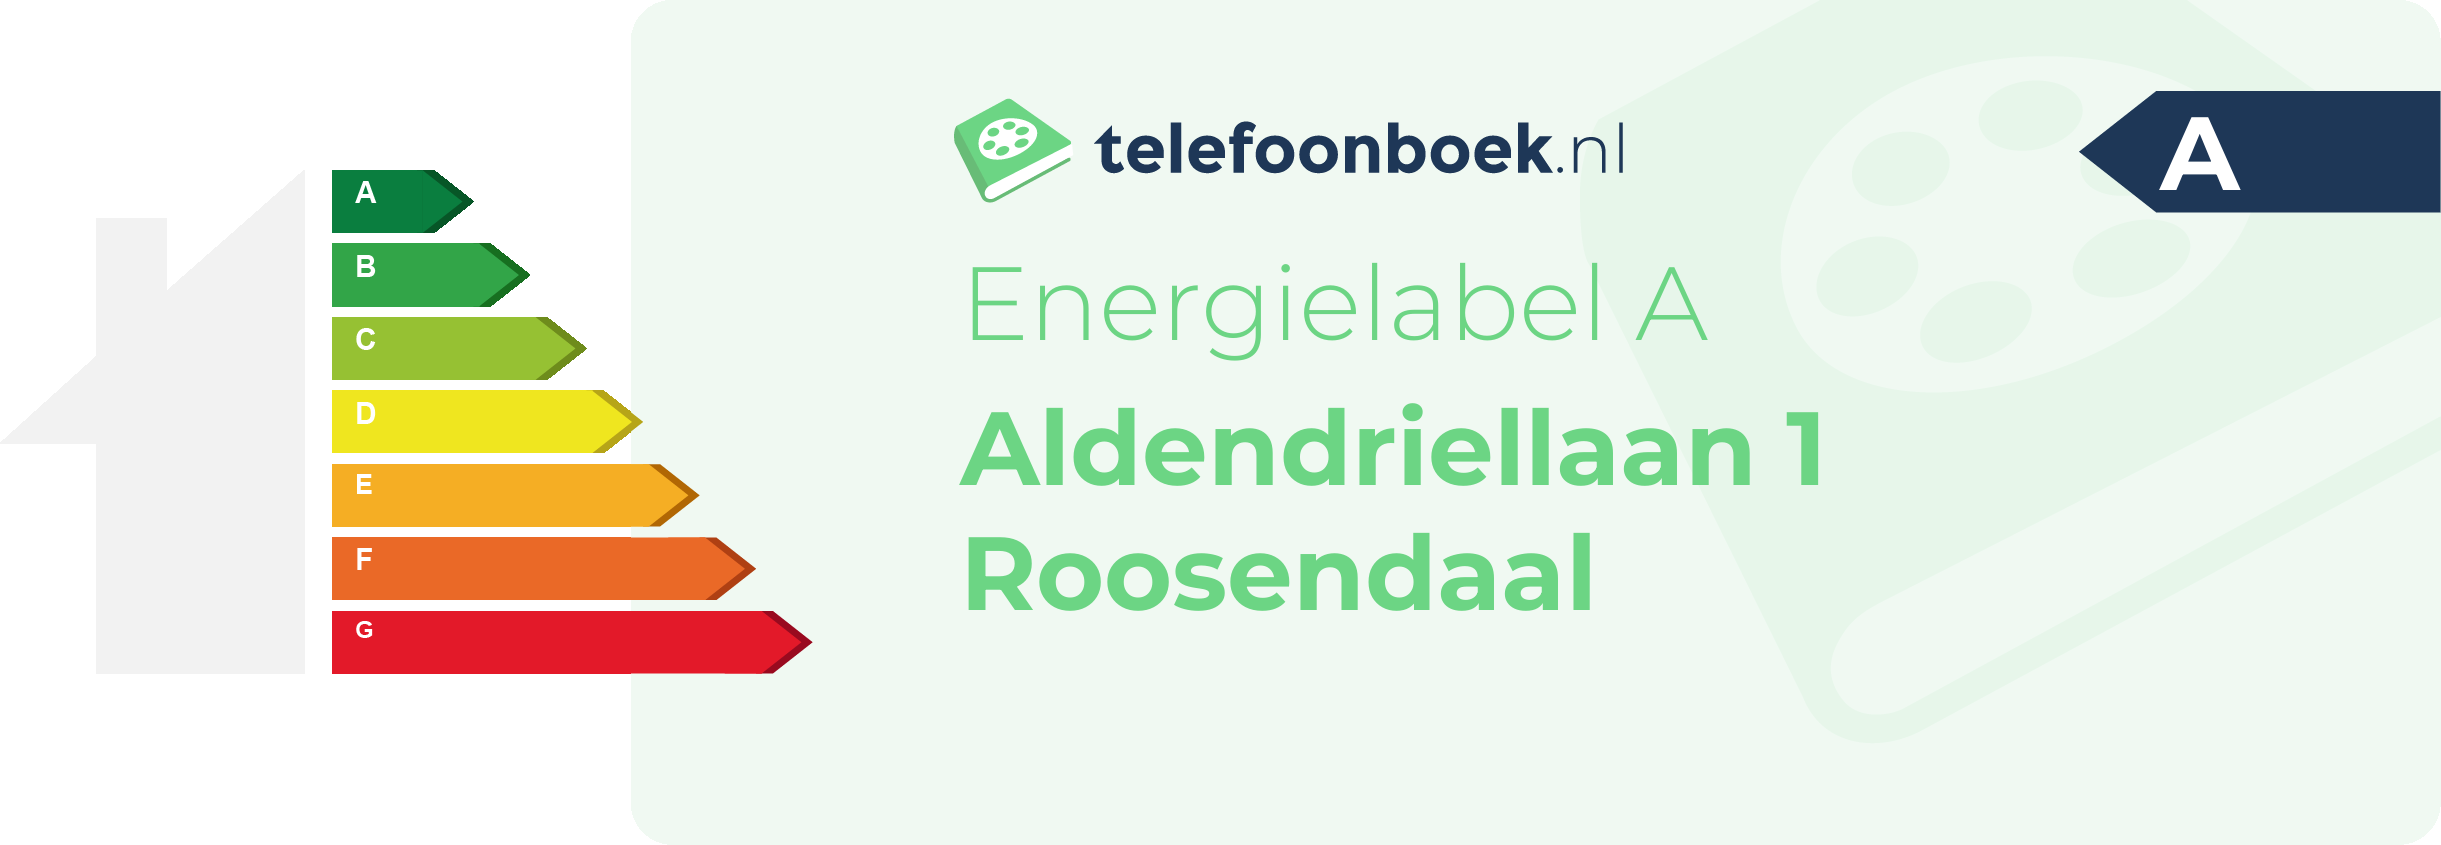 Energielabel Aldendriellaan 1 Roosendaal